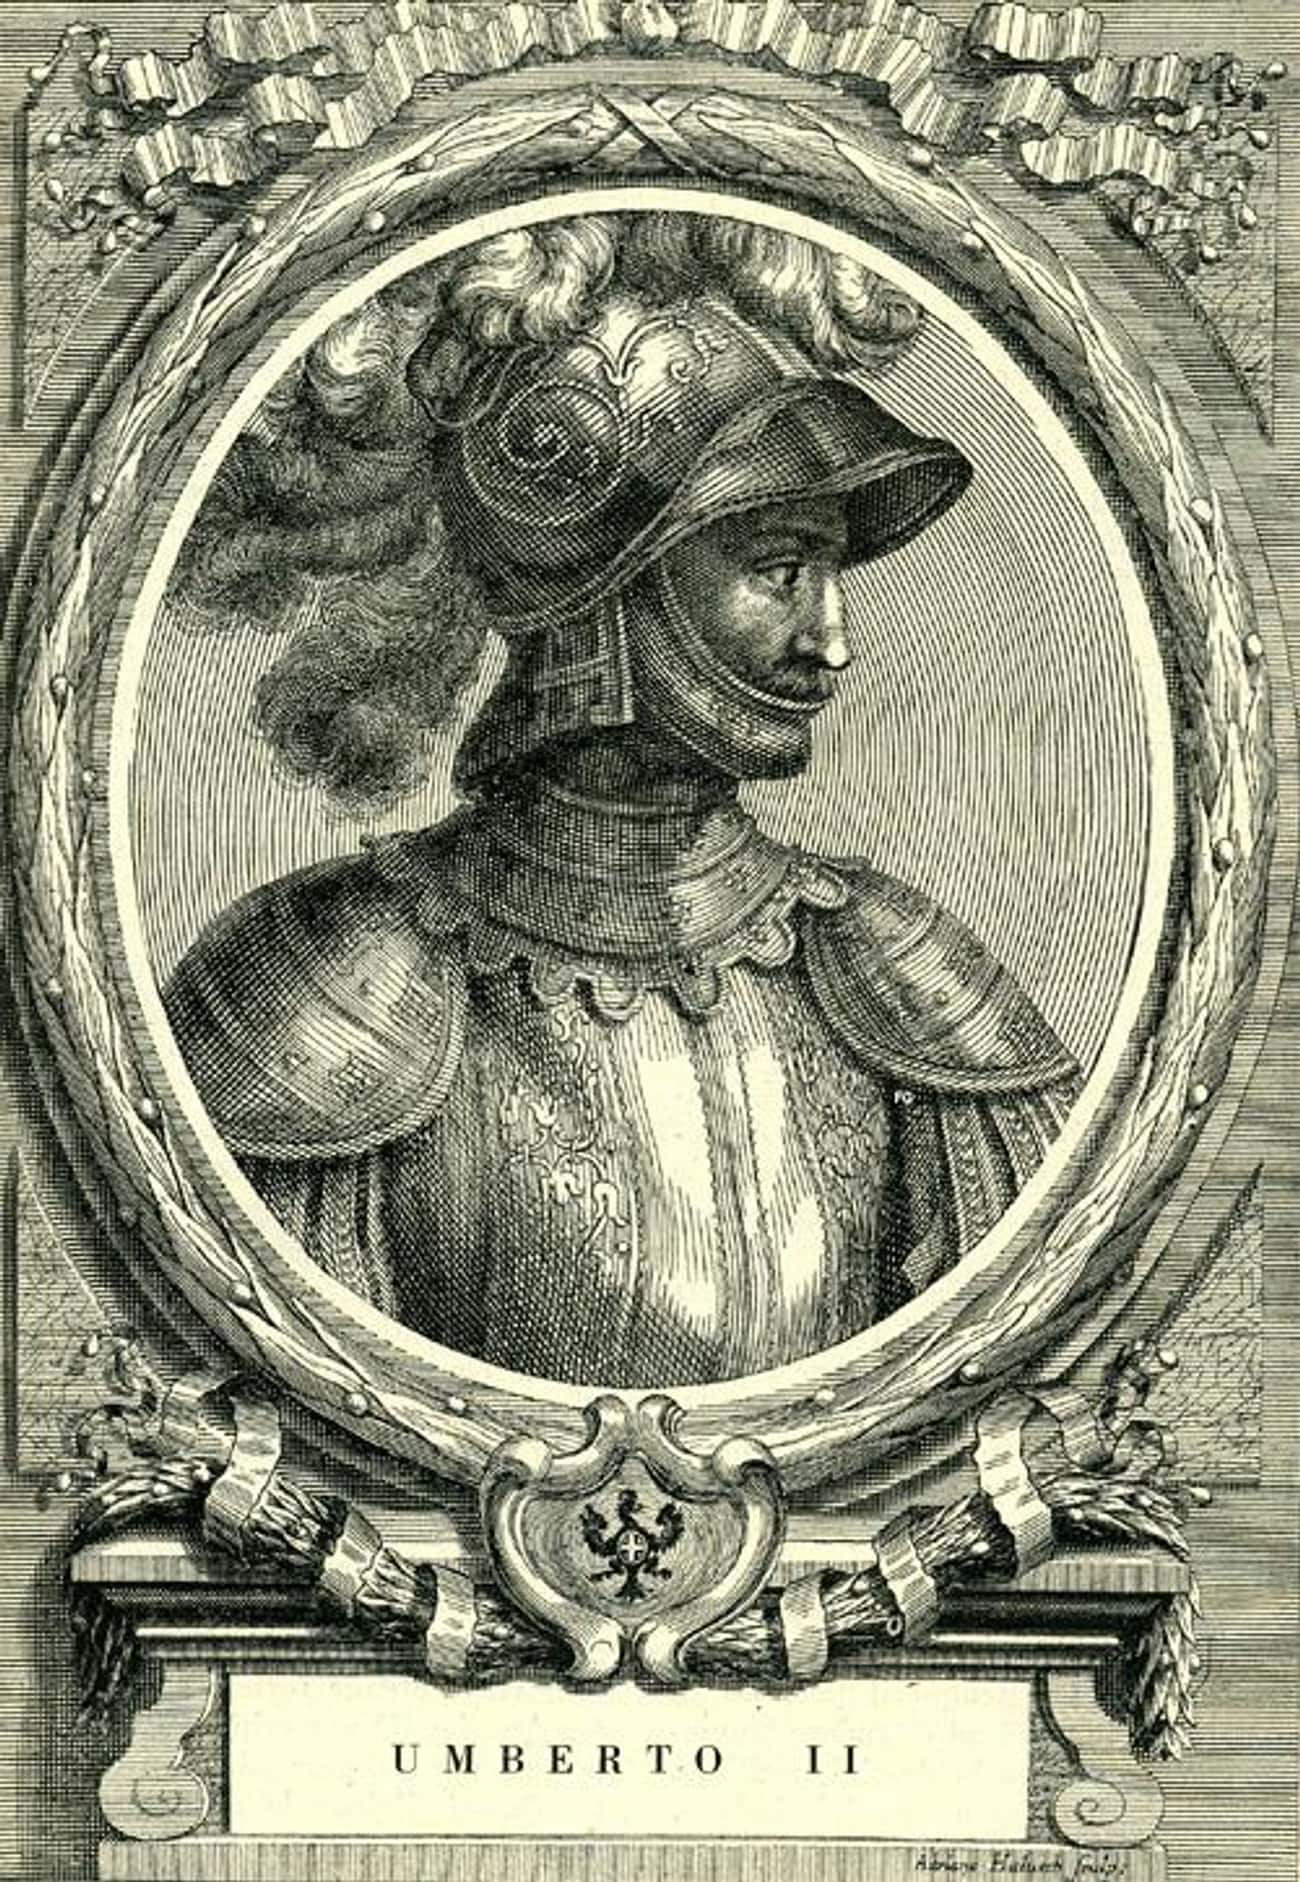 Umberto II, Count of Savoy